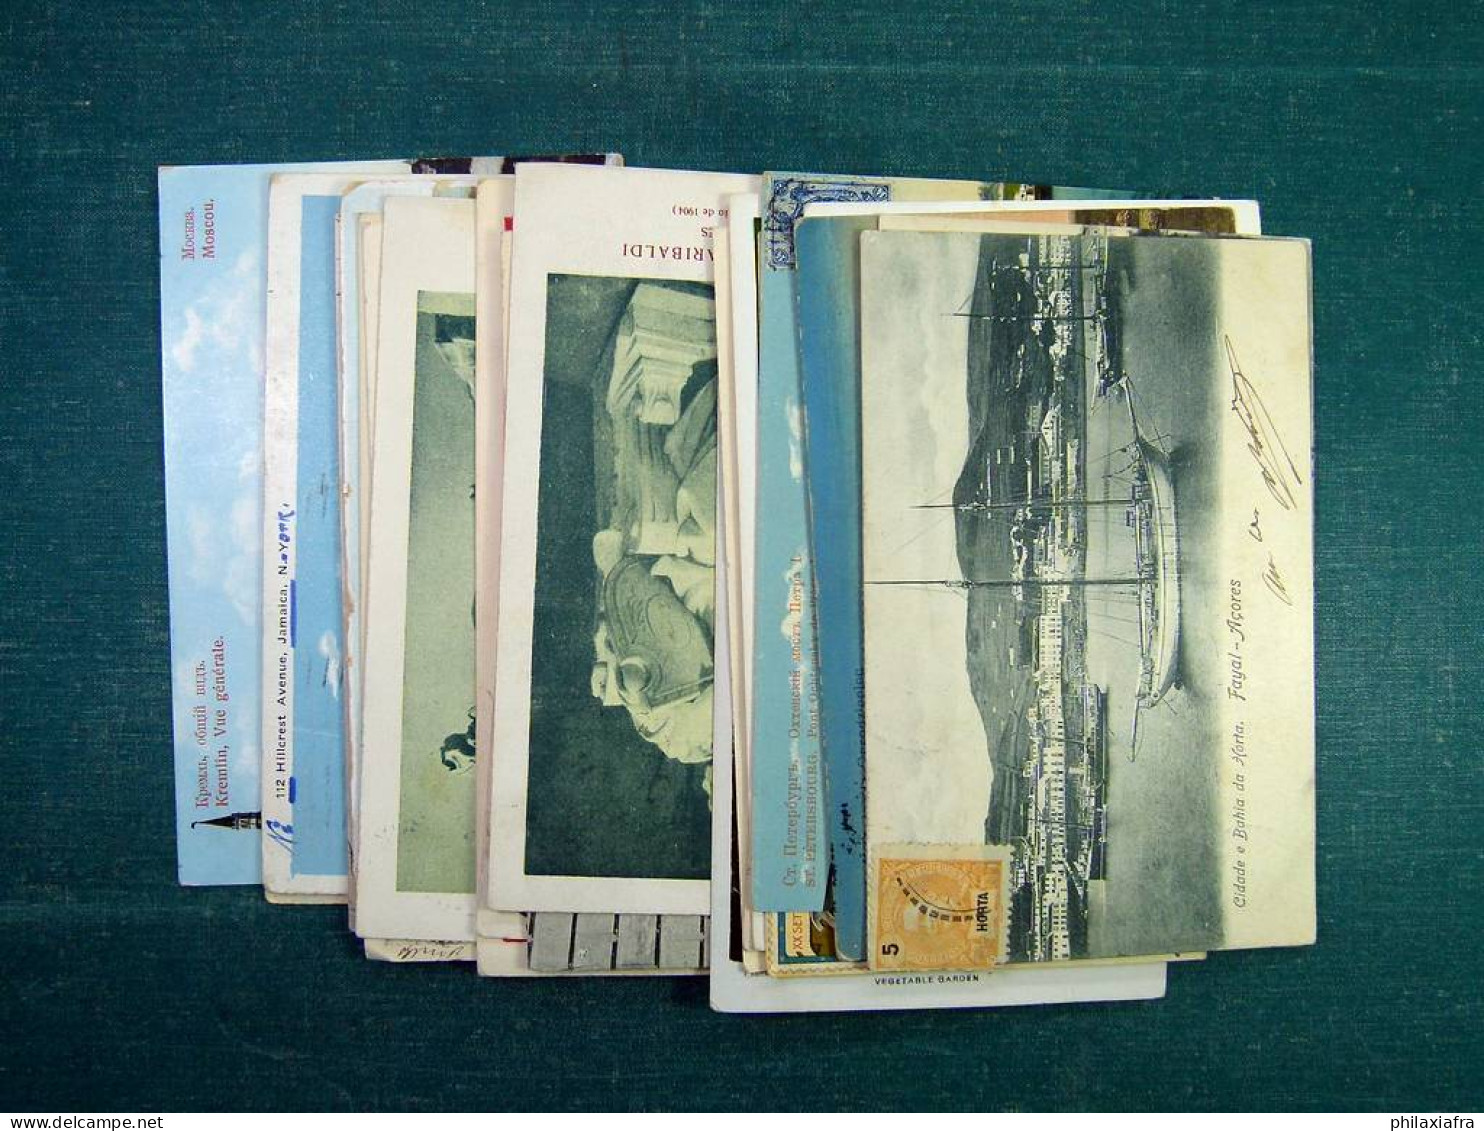 Lot De 28 Cartes Postales, Petit Format, Période Classique, Monde. - Sammlungen (im Alben)